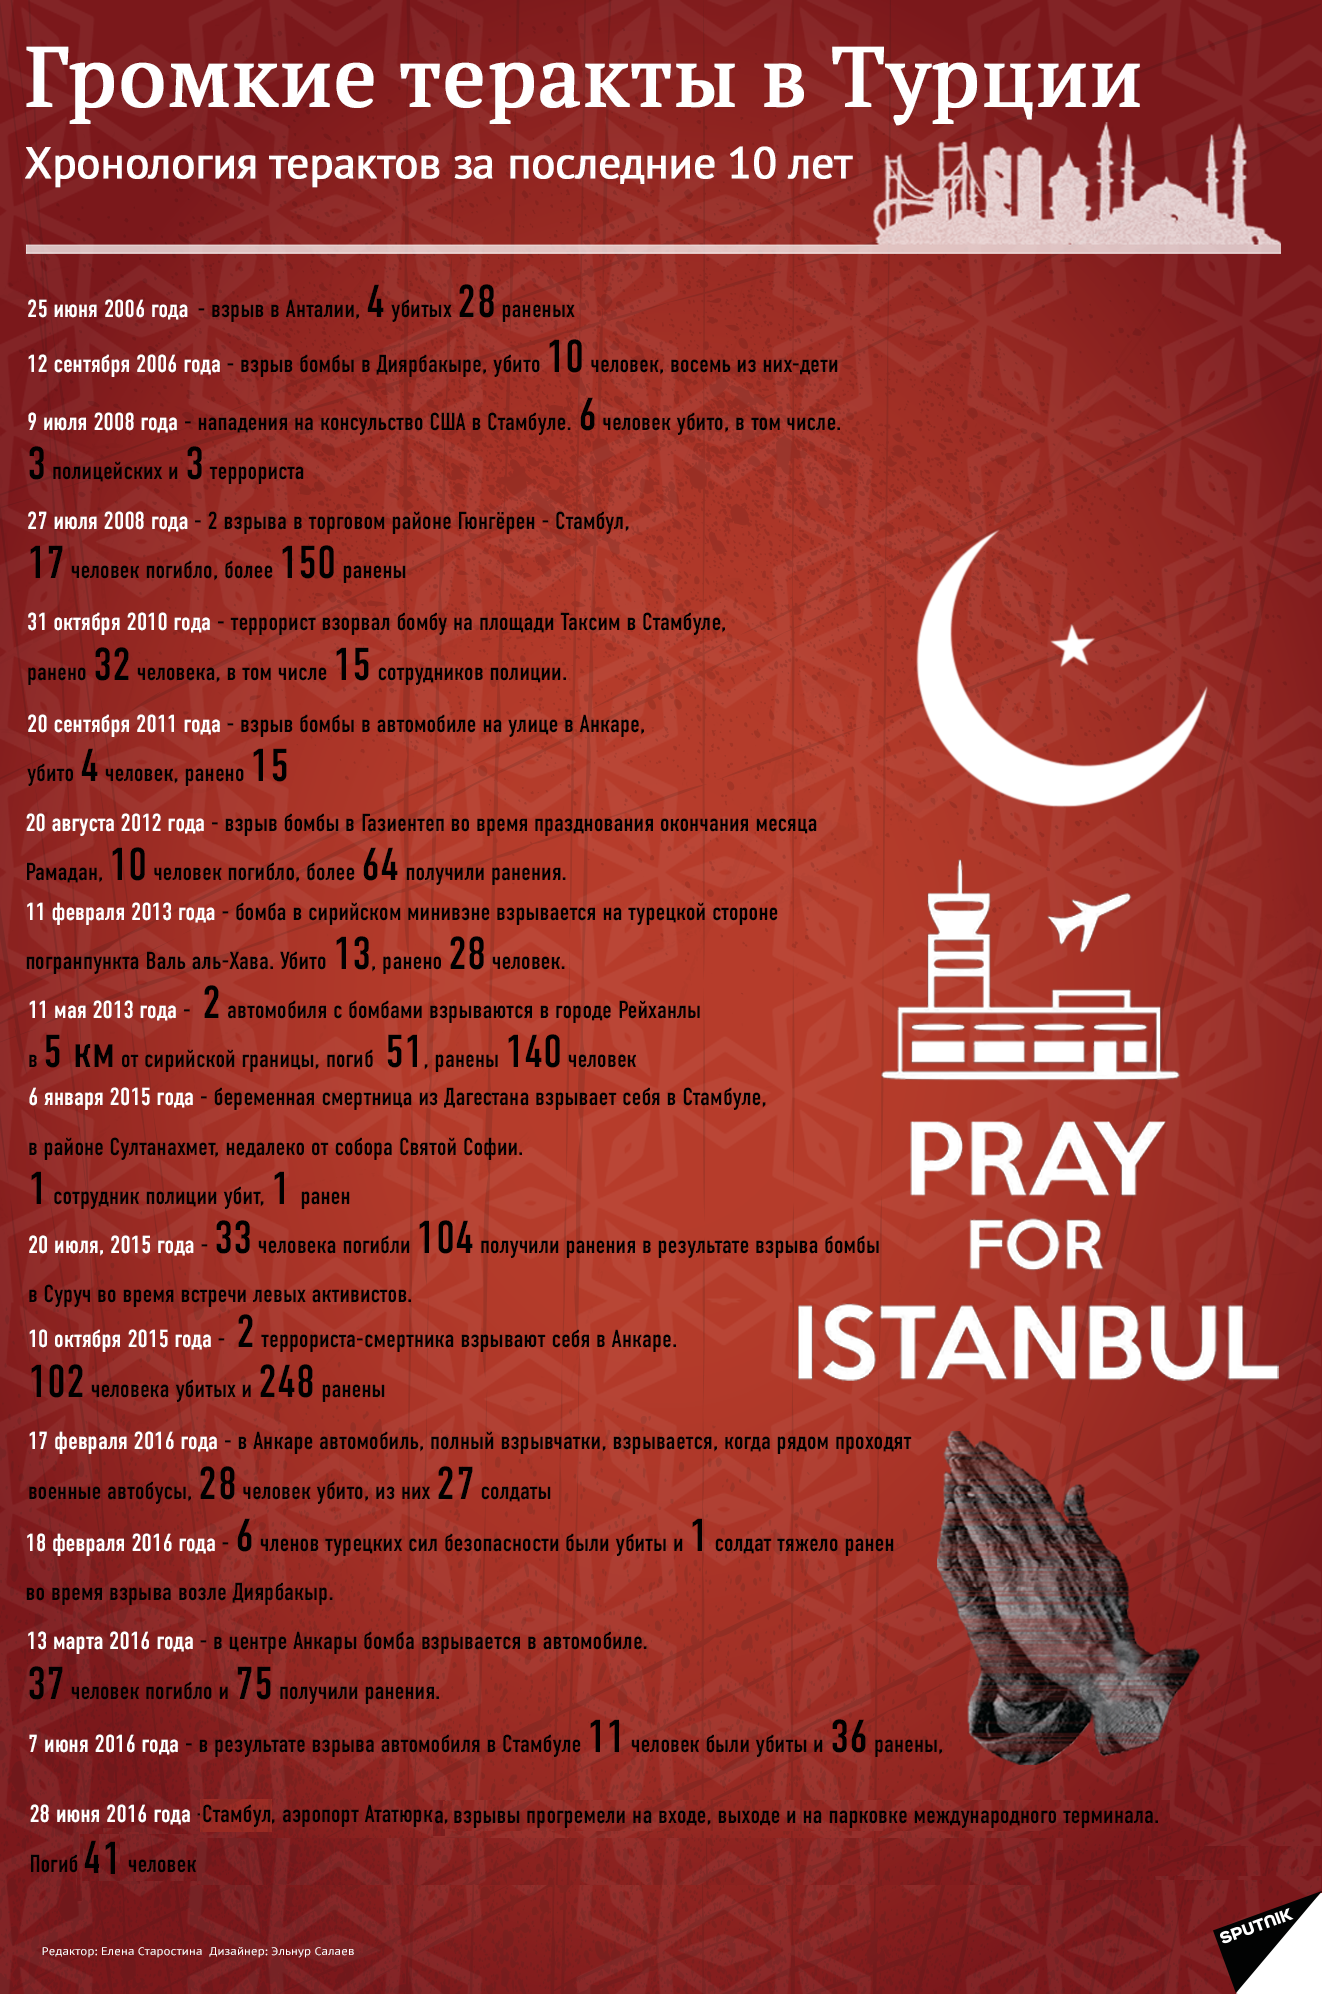 Хронология громких терактов в Турции за последние 10 лет. Инфографика